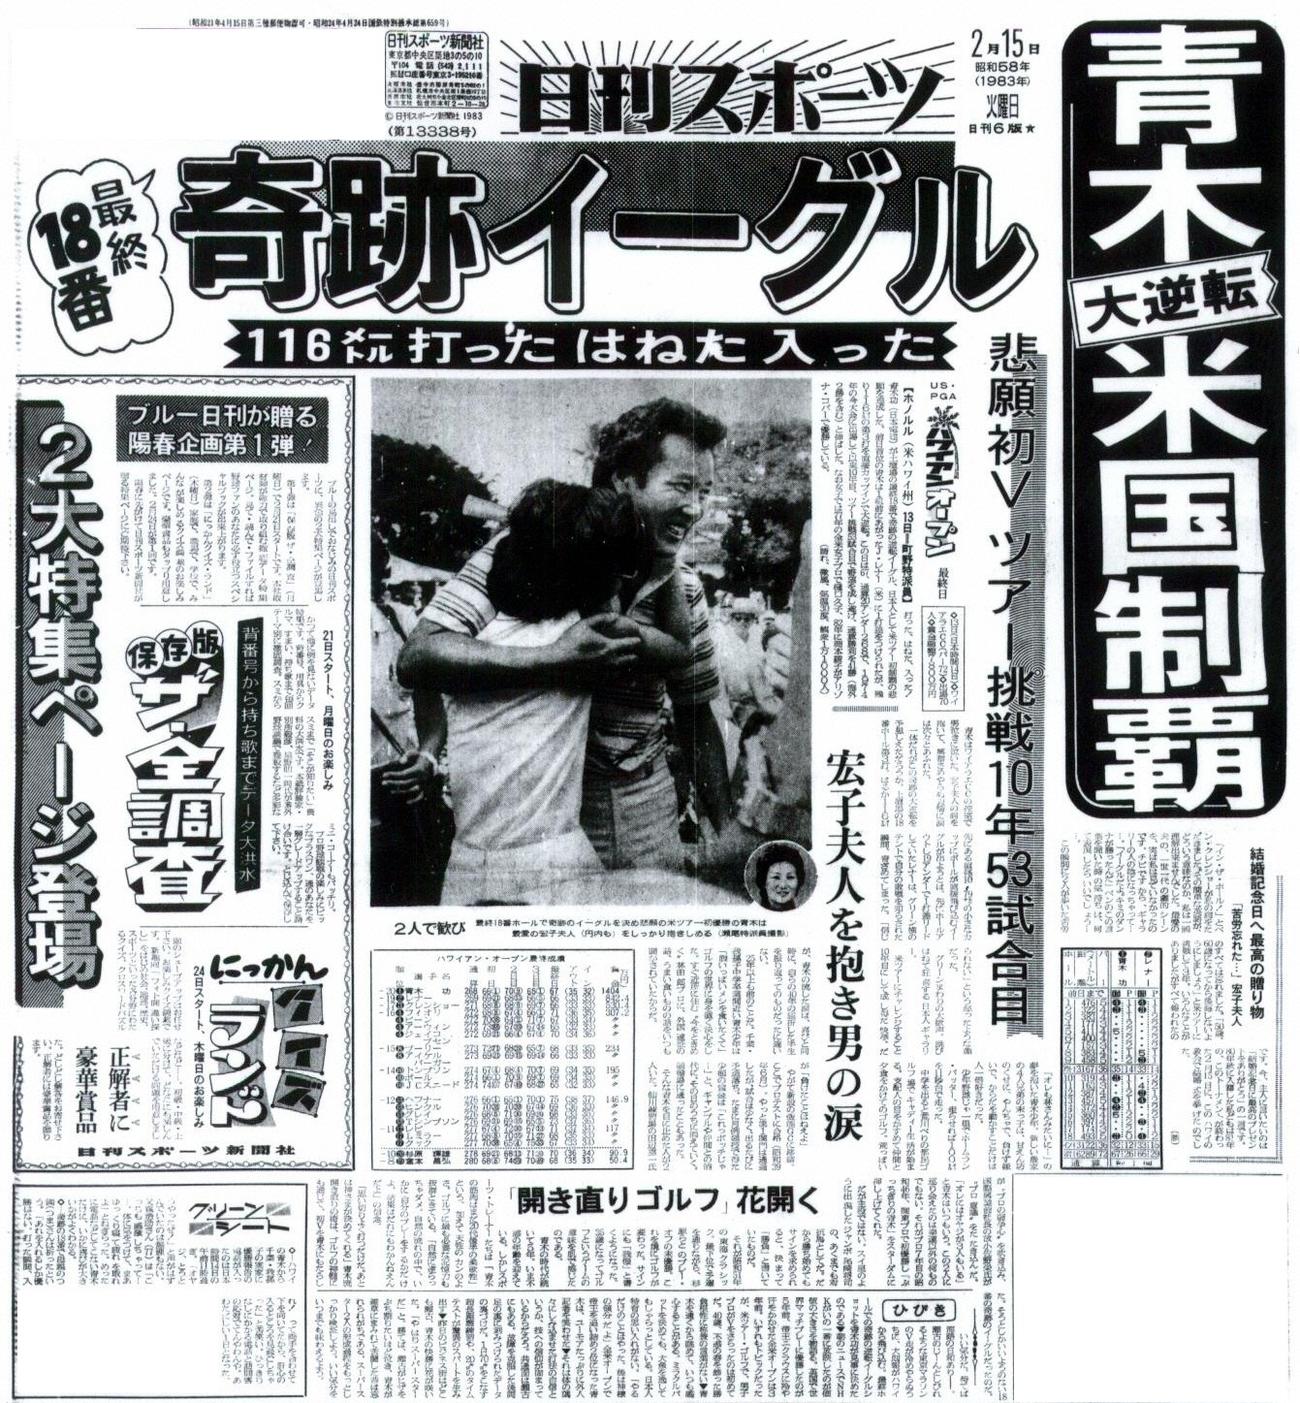 青木の米ツアー初優勝を報じる1983年2月16日付けの日刊スポーツ１面